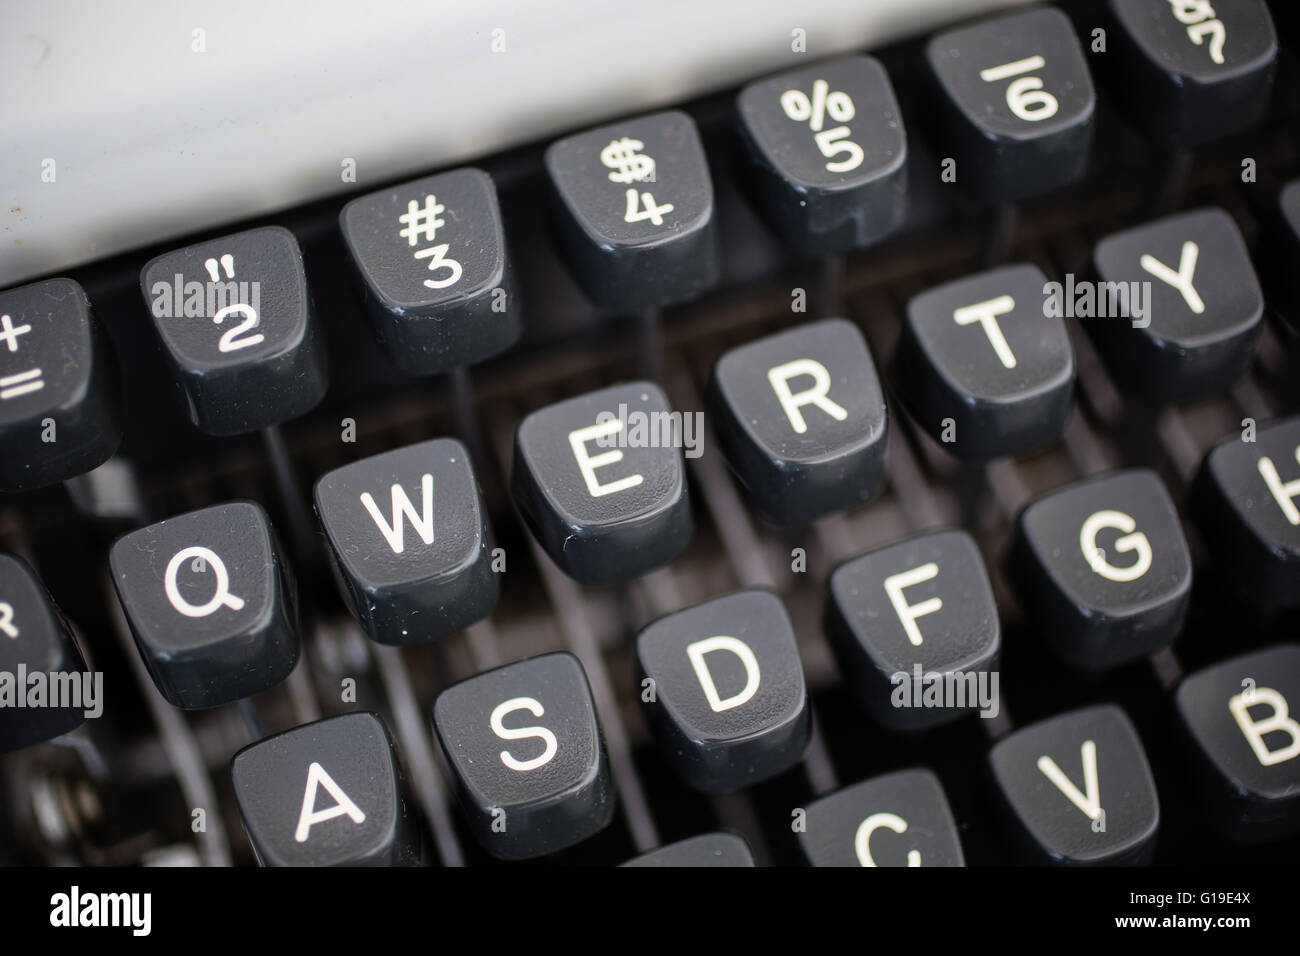 Vue de détail des touches sur un ordinateur portable, machine à écrire en métal vers 1970, sur la diagonale. L'accent est mis sur le clavier AZERTY. Peut être utilisé en symbole Banque D'Images